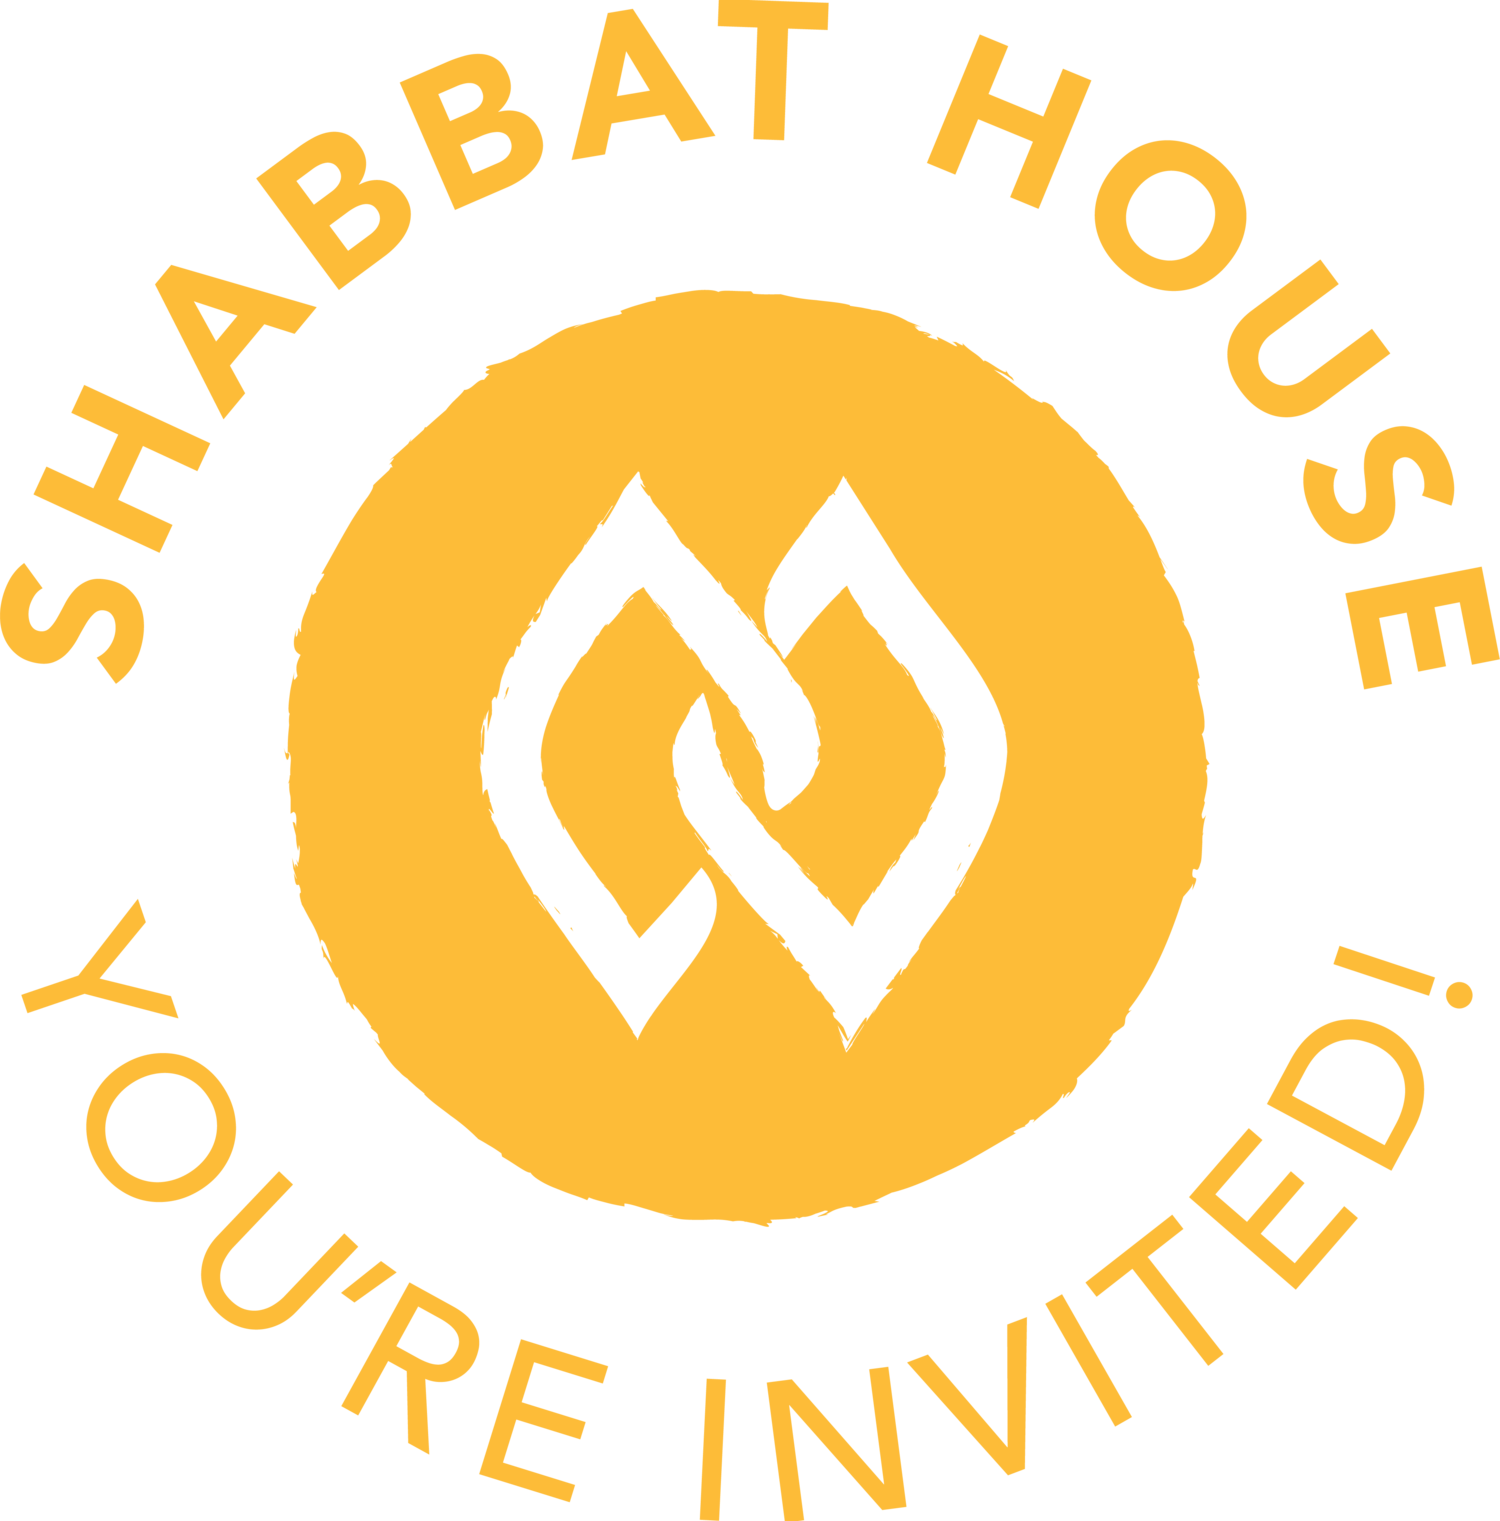 SHABBAT HOUSE